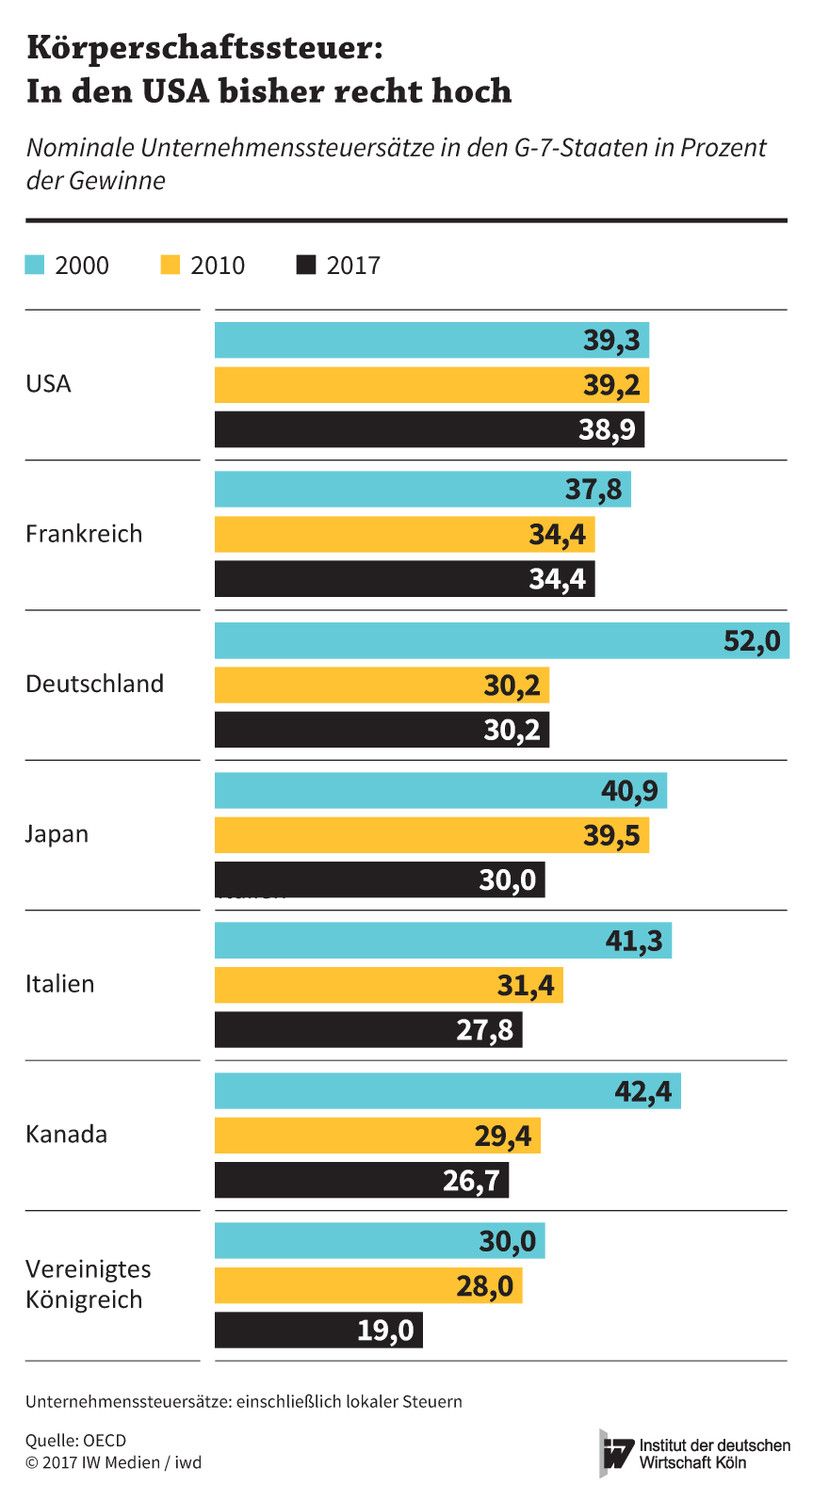 Nominale Unternehmenssteuersätze im Vergleich der G-7-Länder